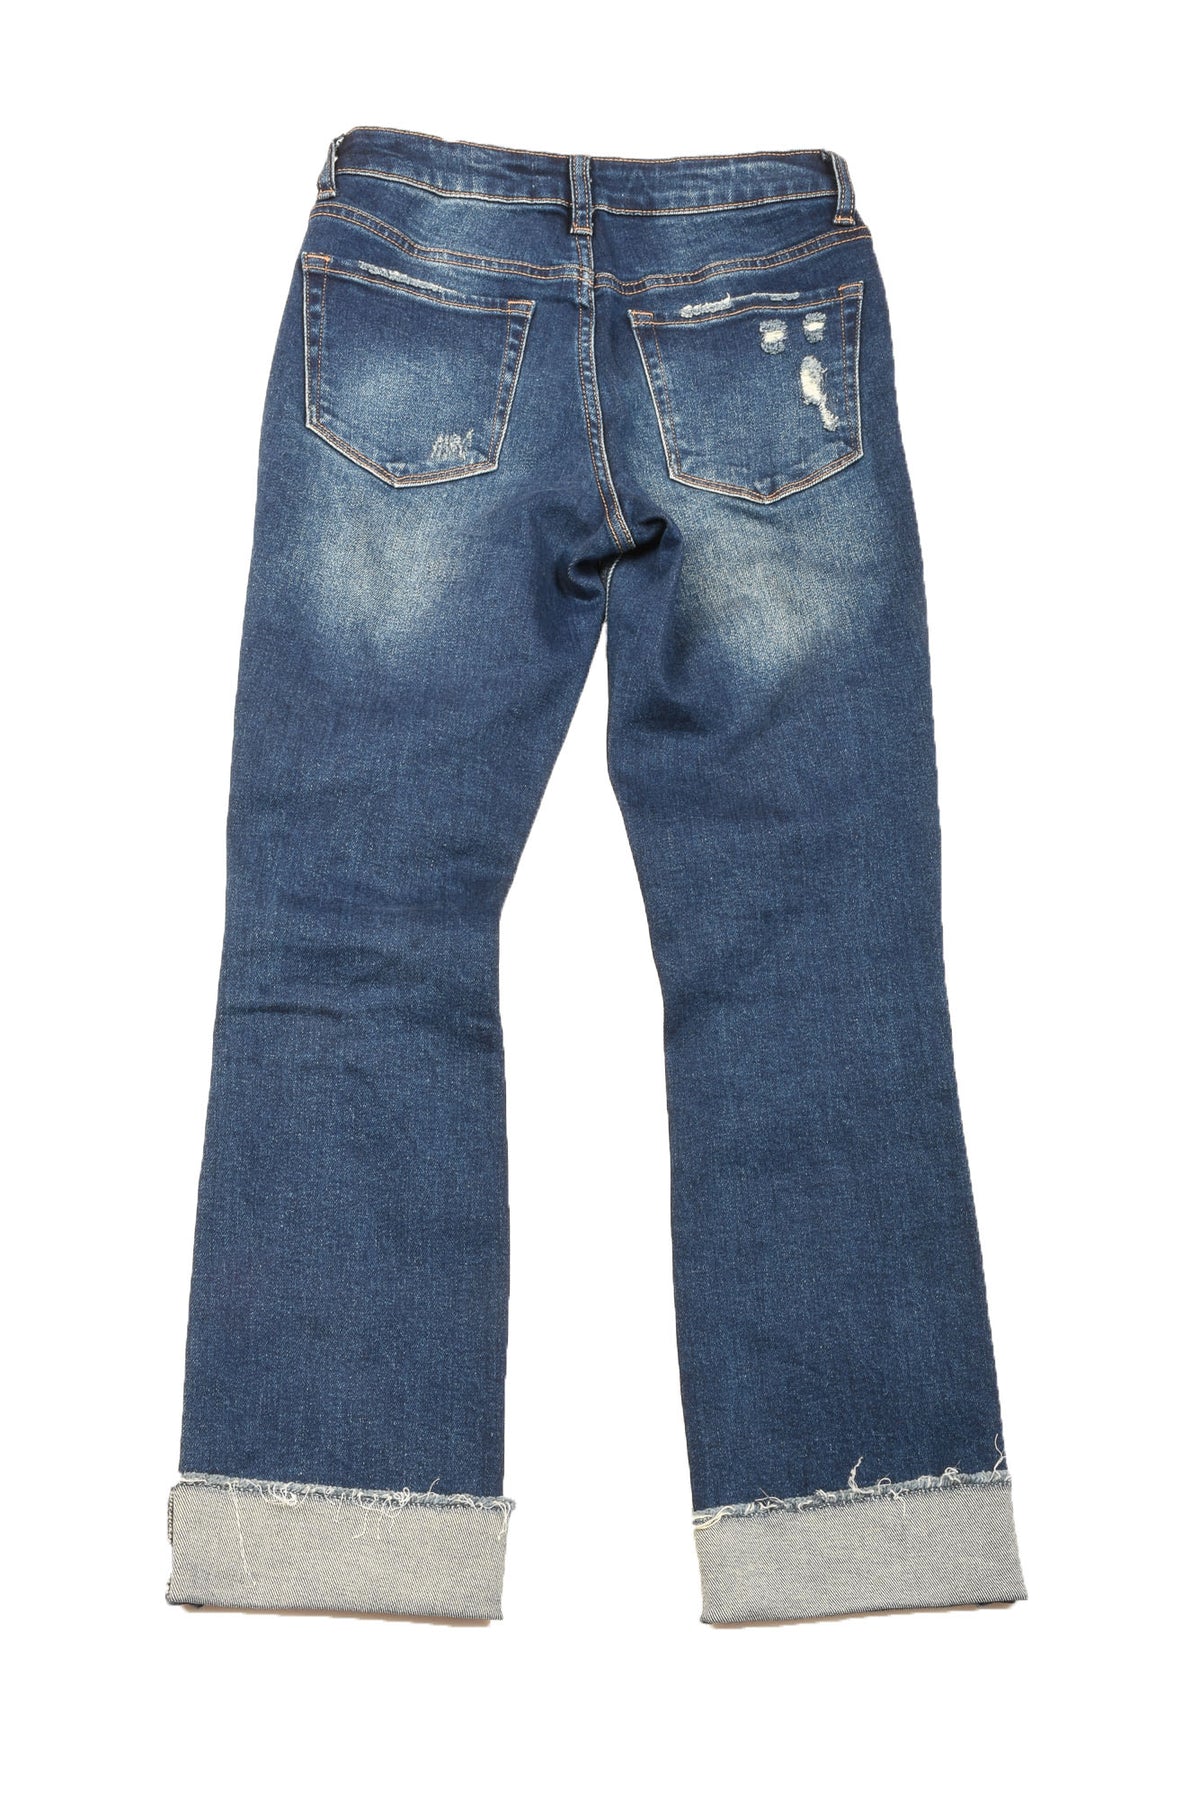 Vervet Size 24 Women&#39;s Jeans